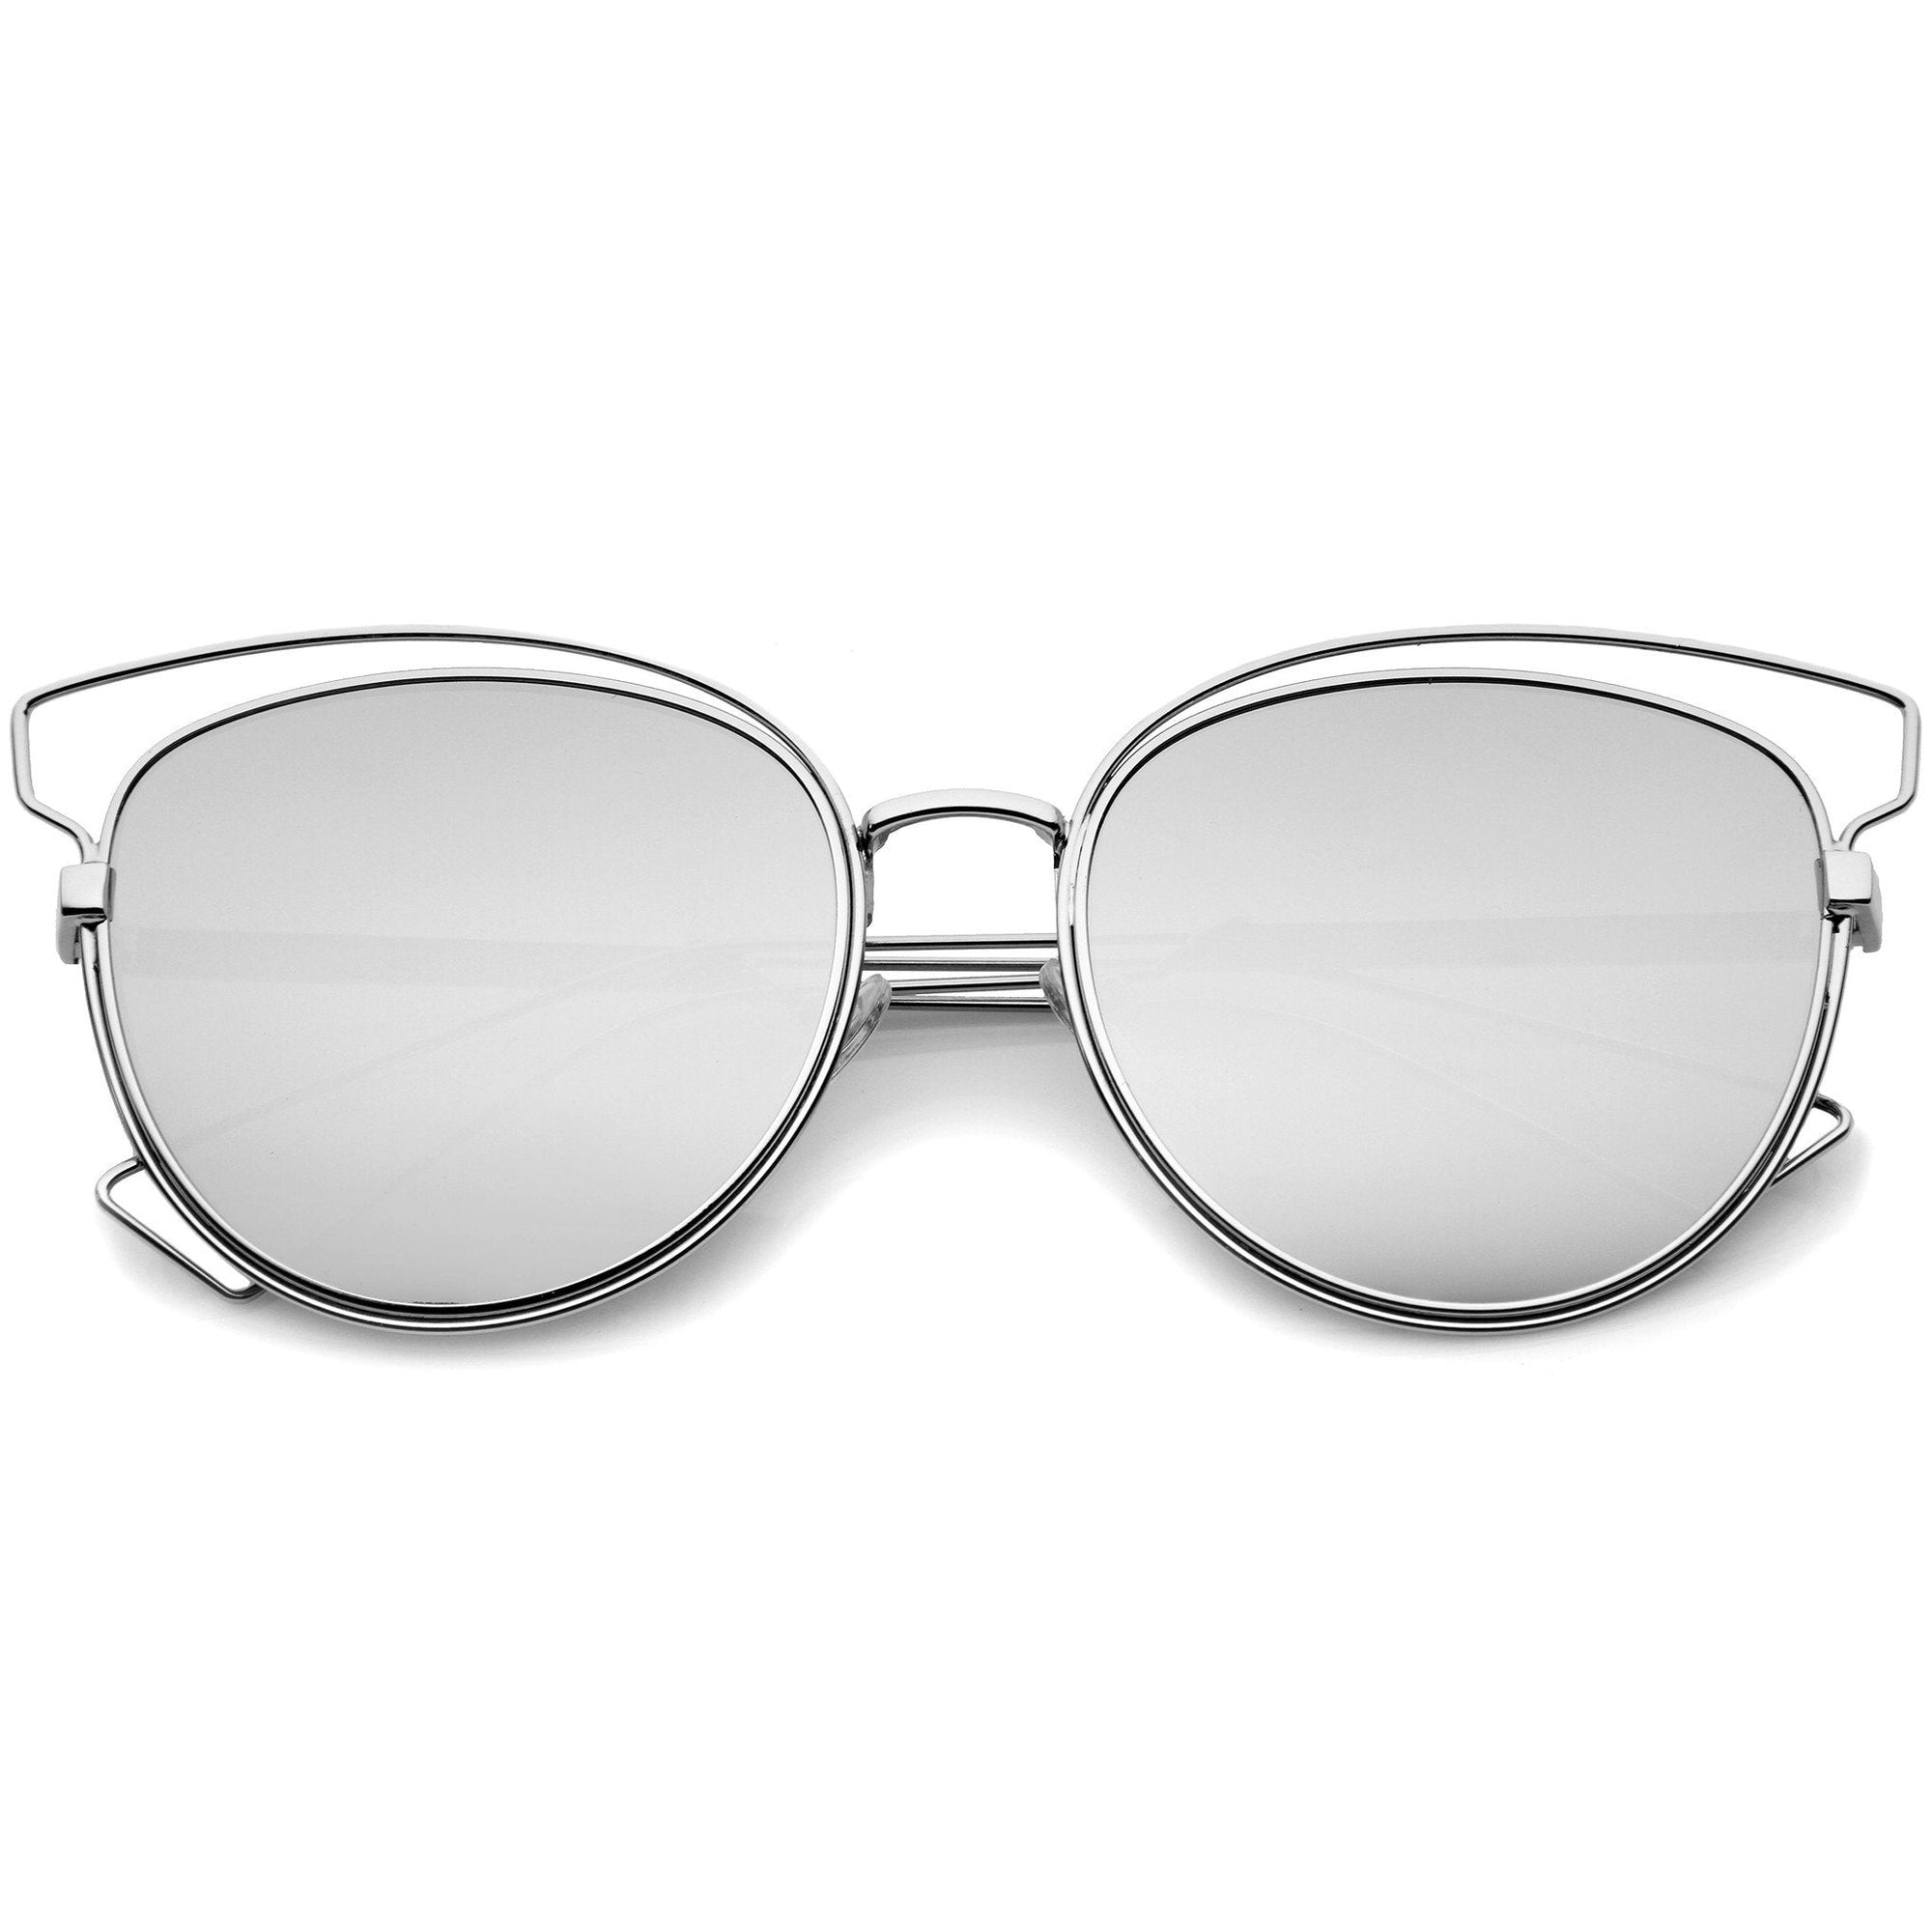 Gafas de sol de metal con forma de ojo de gato y lentes planas modernas para mujer A323